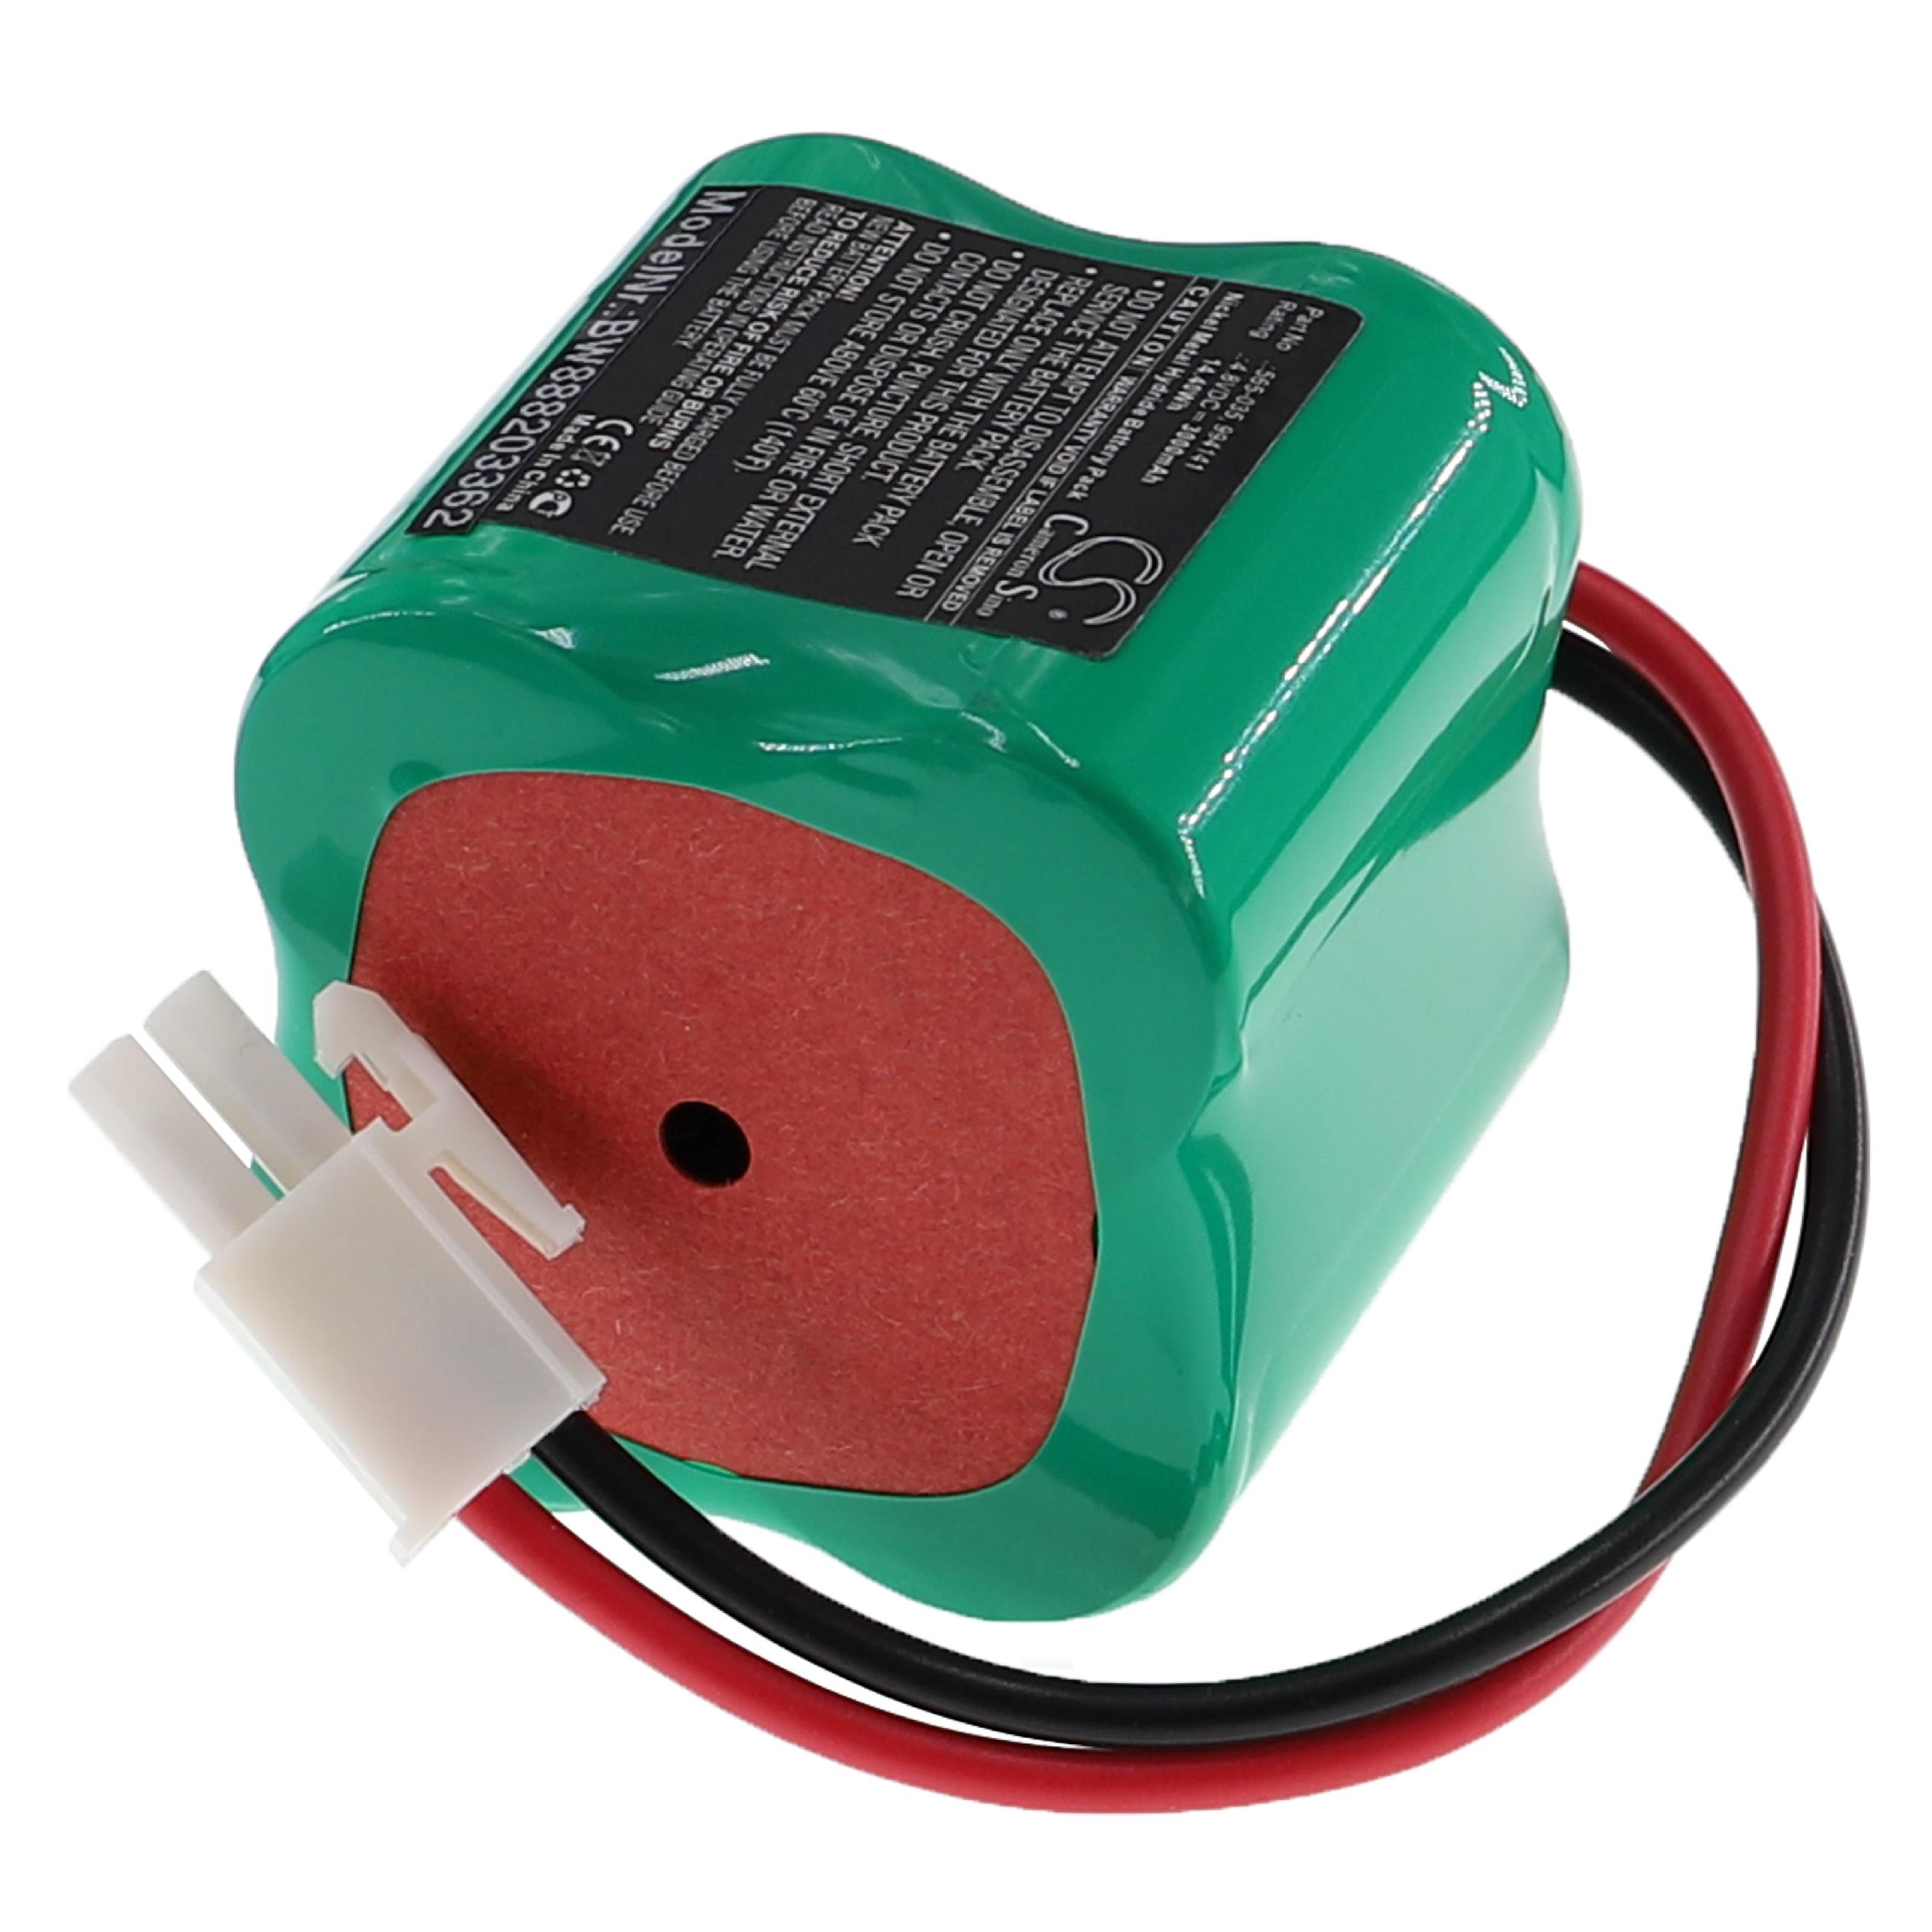 Akumulator do urządzeń owadobójczych zamiennik Mosquito Magnet 565-035, 9994141 - 3000 mAh 4,8 V NiMH